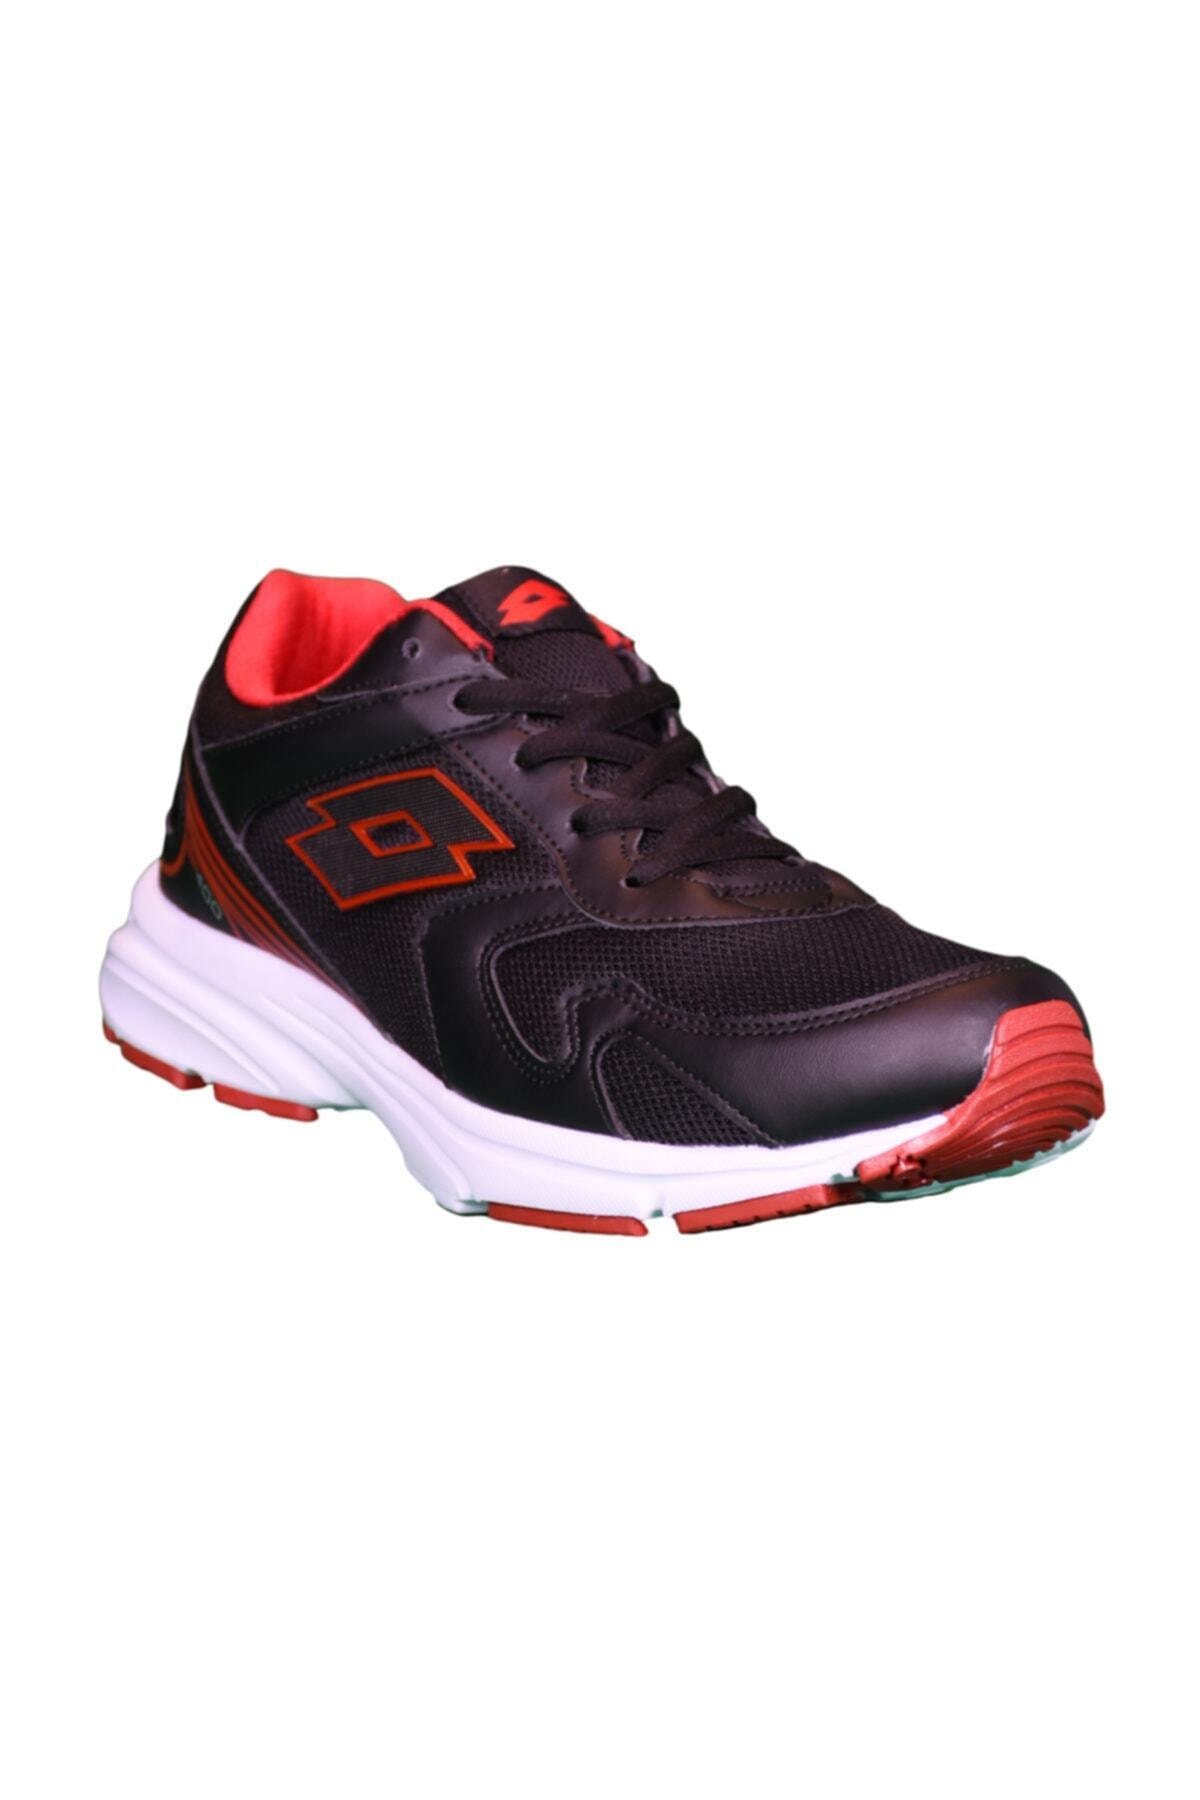 Koşu Ayakkabı - Bento - T1262 - Kırmızı-siyah